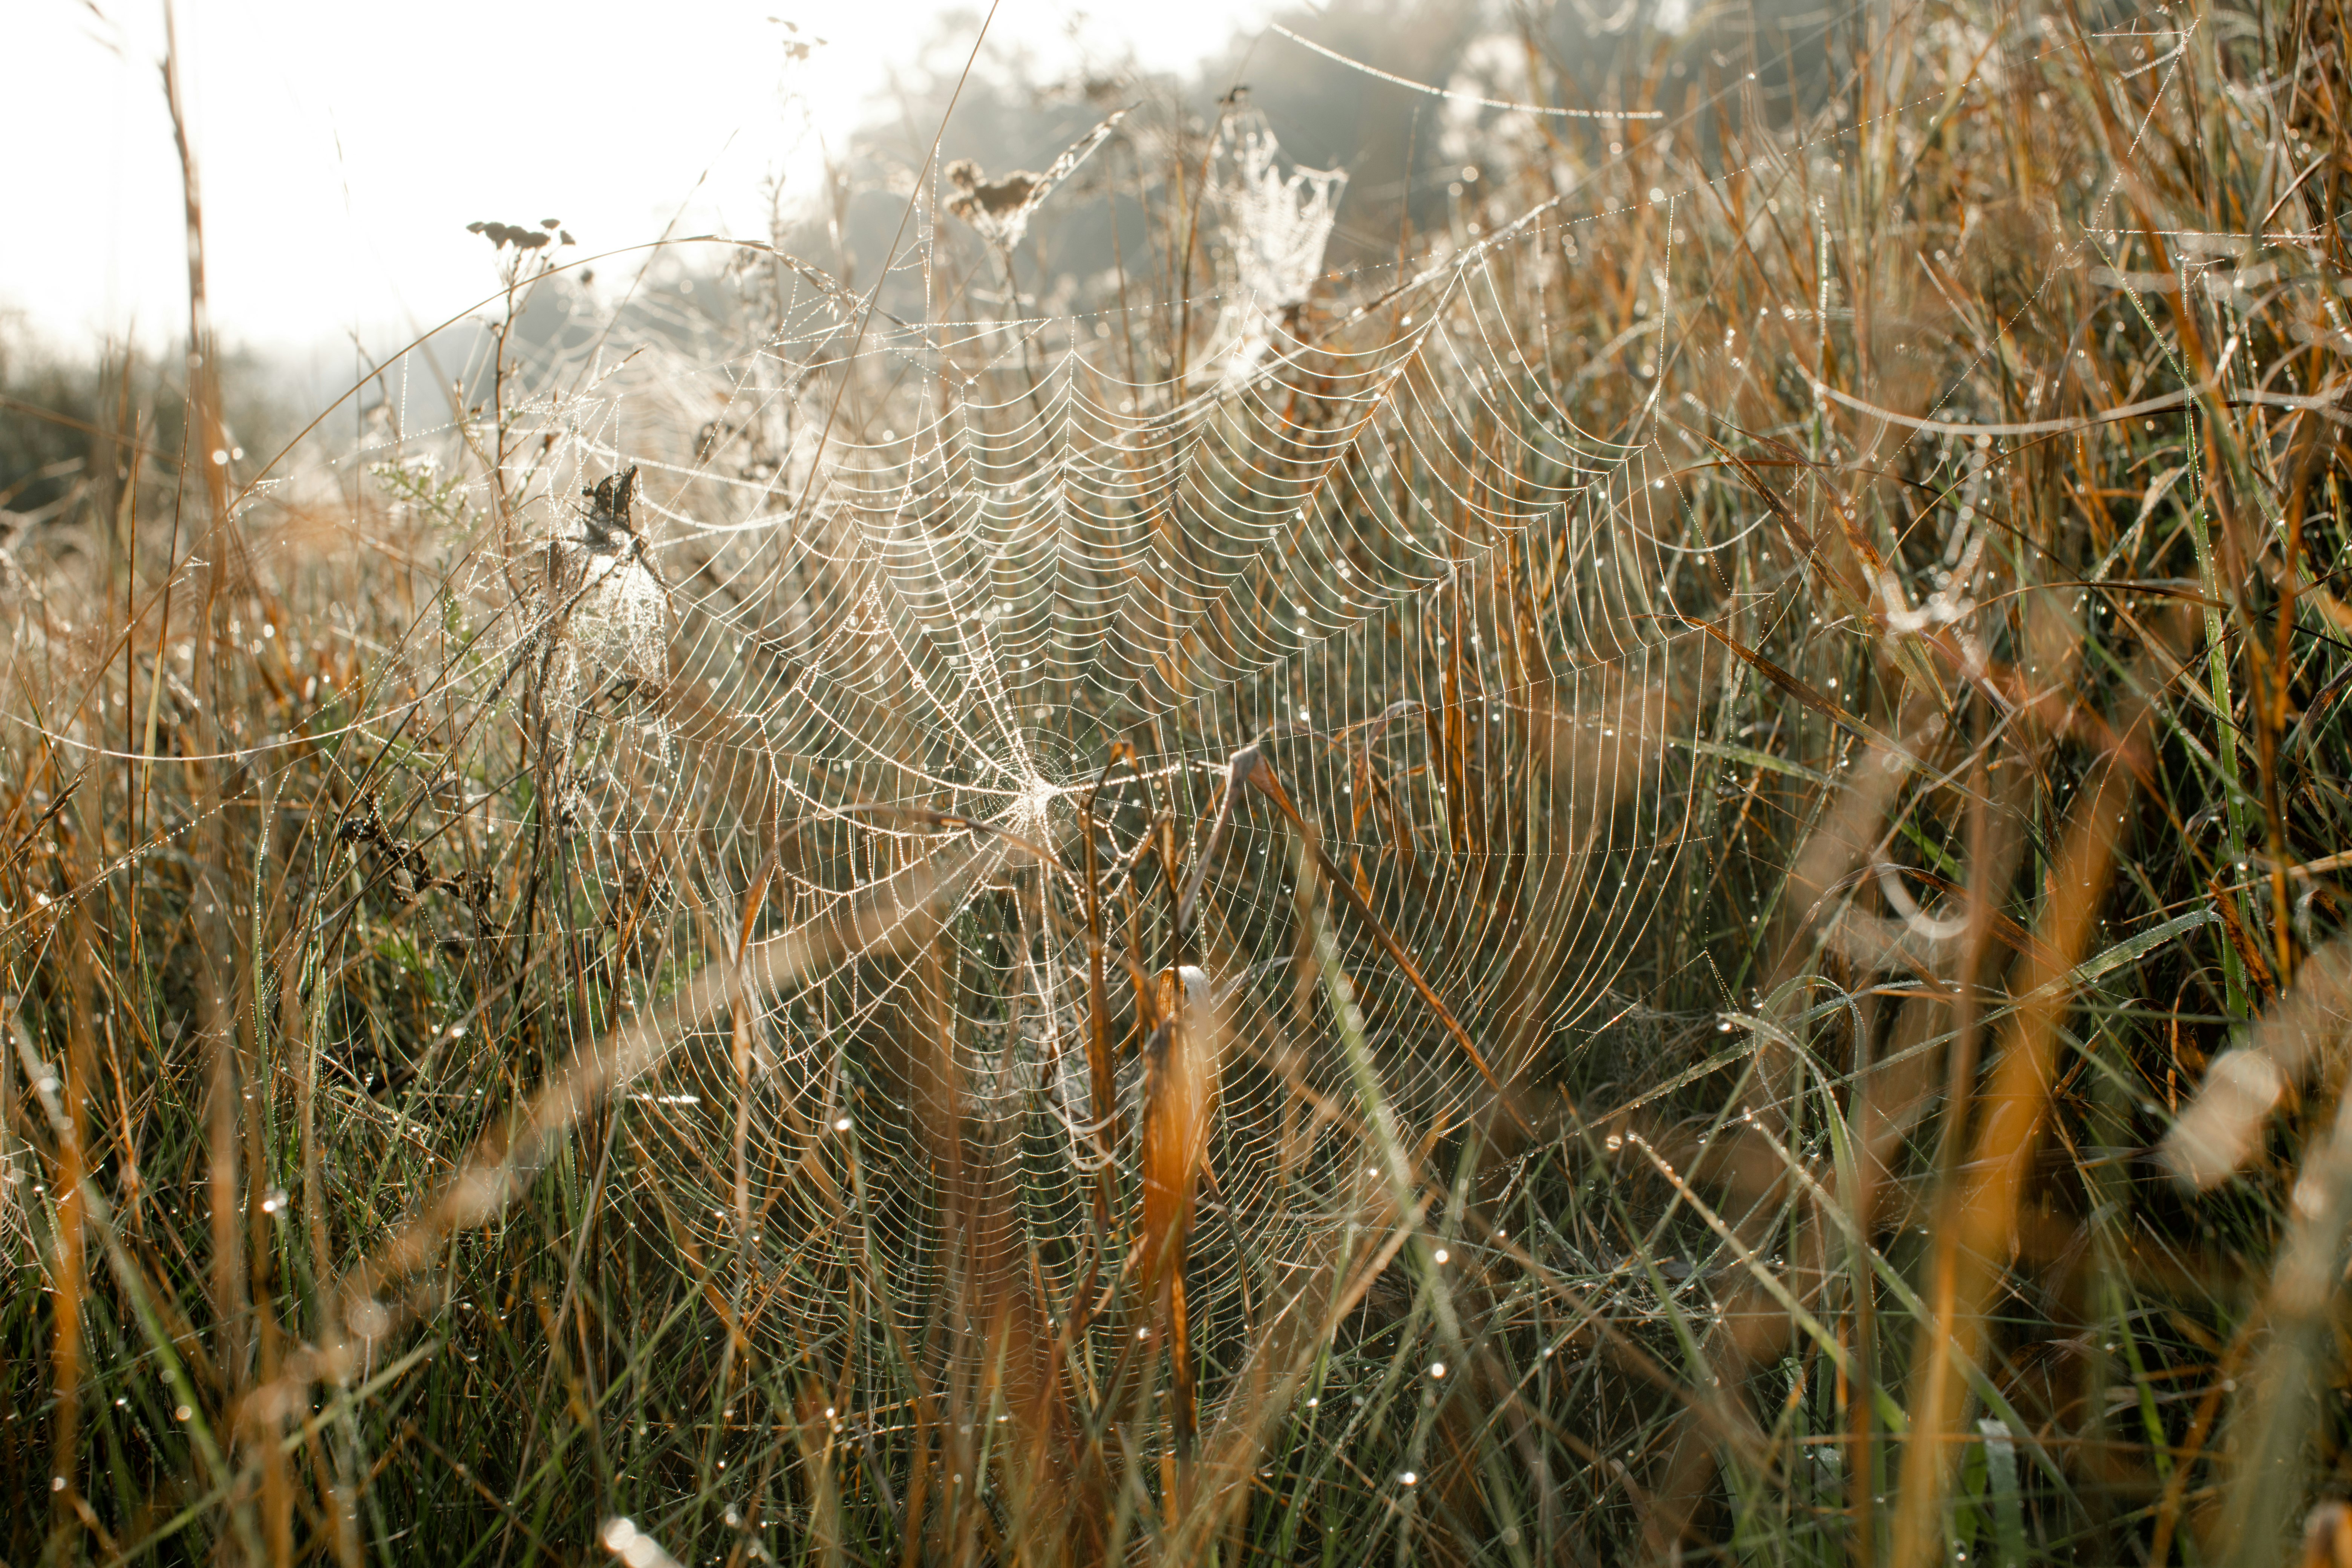 spider on brown grass field